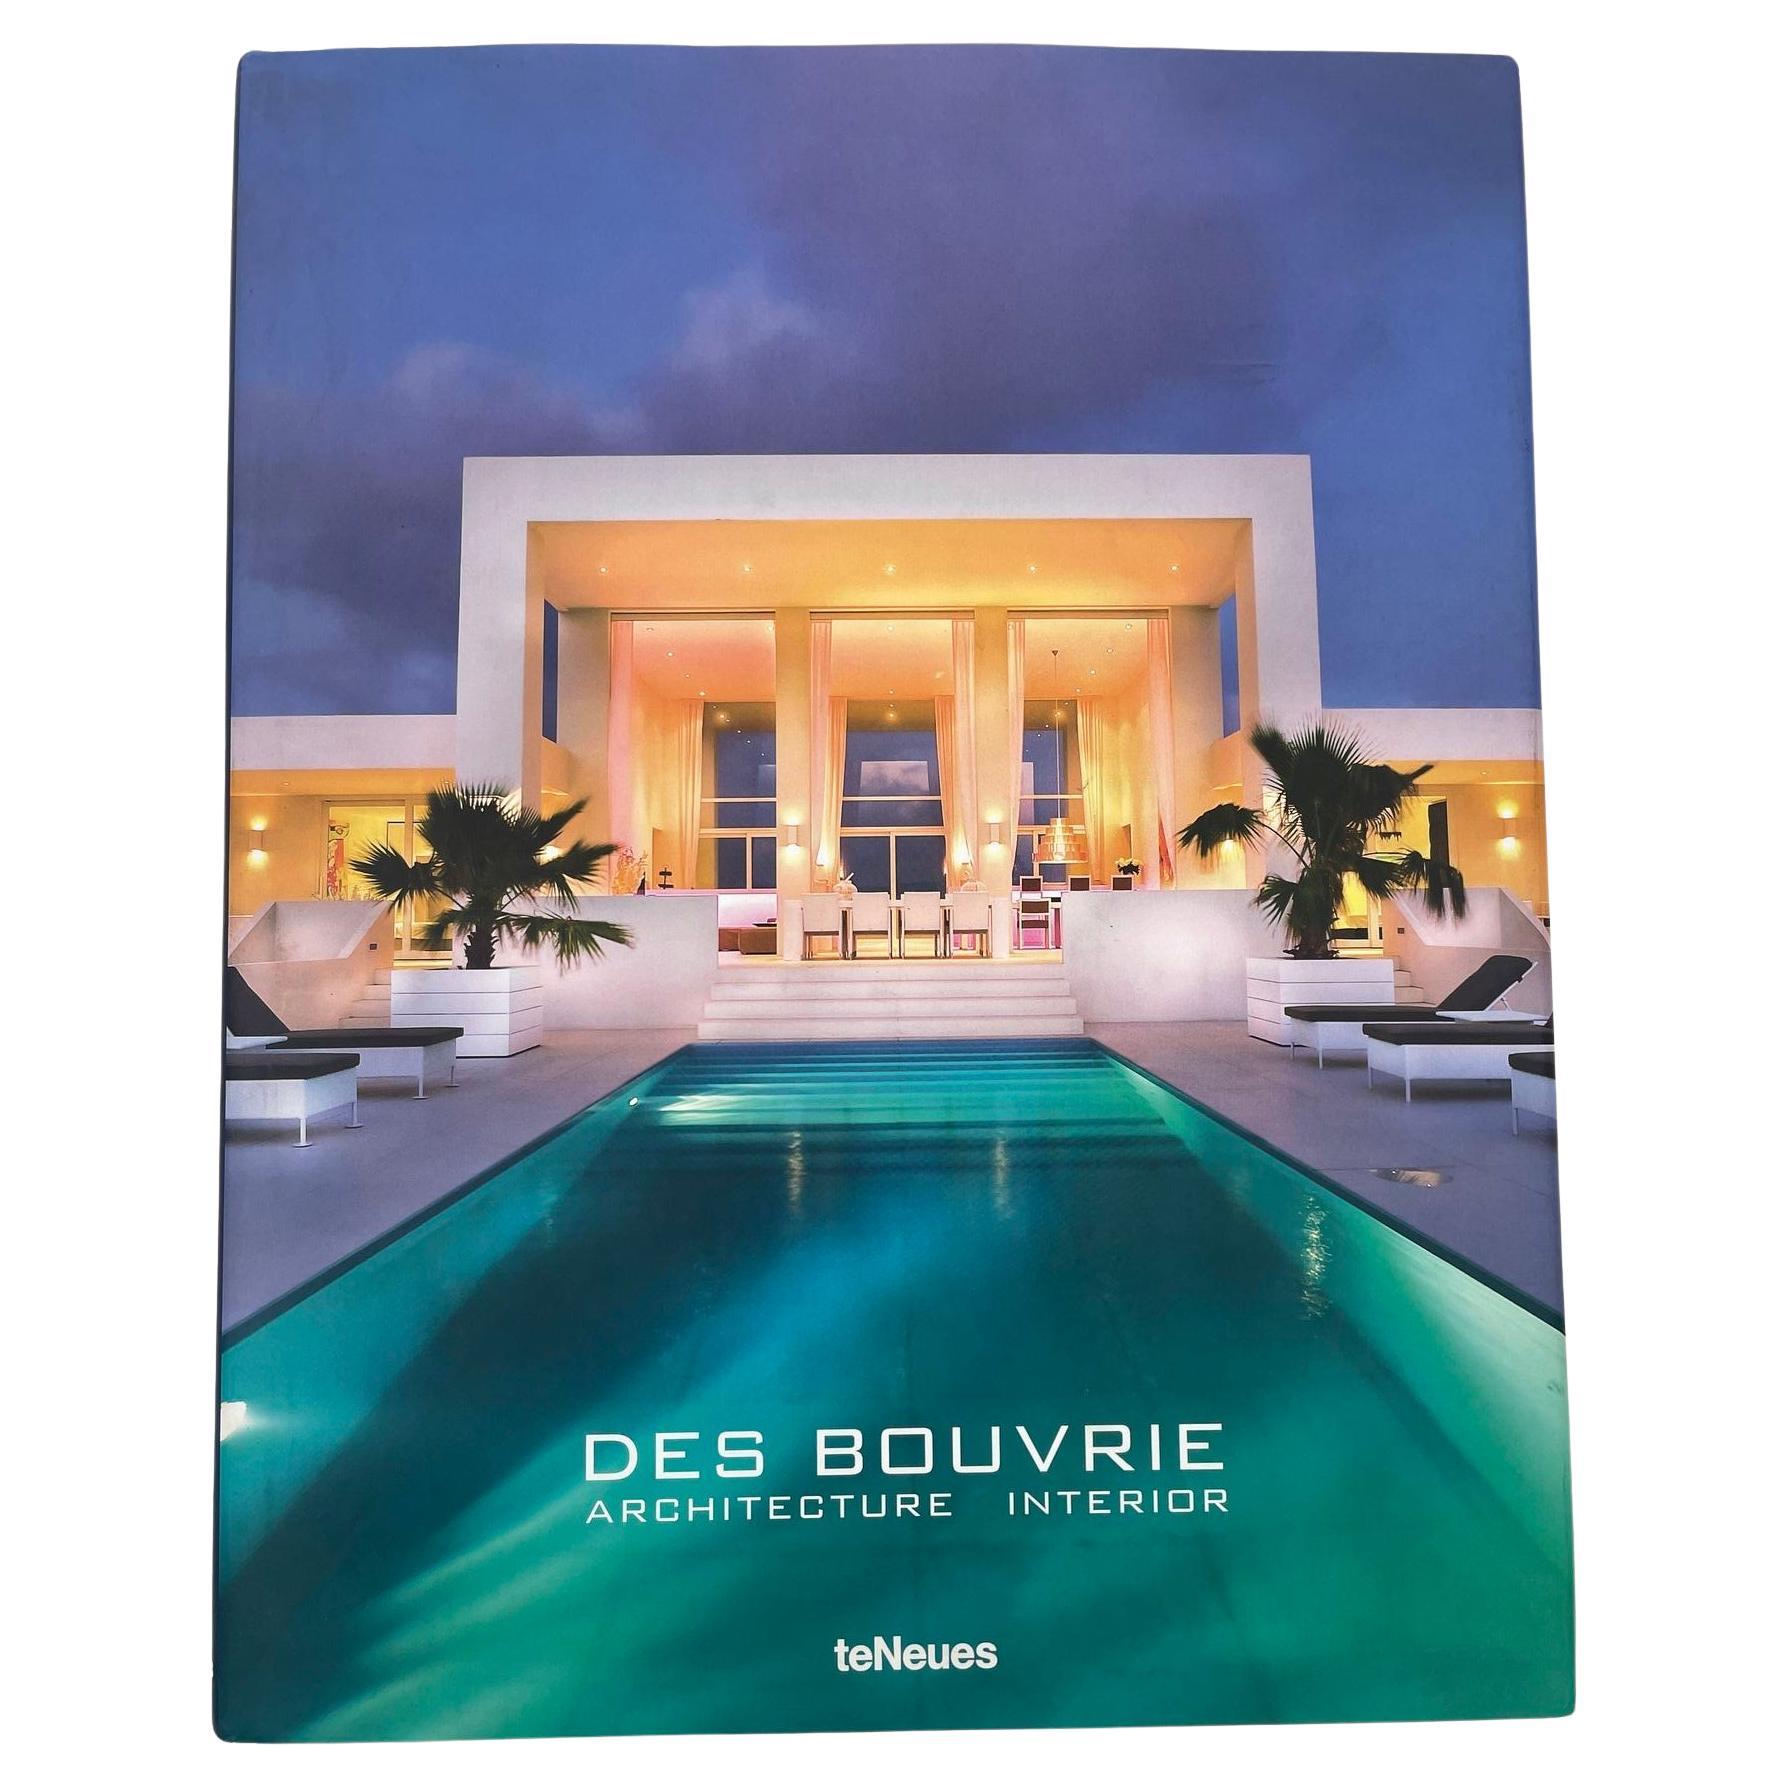 Des Bouvrie, Architecture Interior by Jan and Monique des Bouvrie 2015